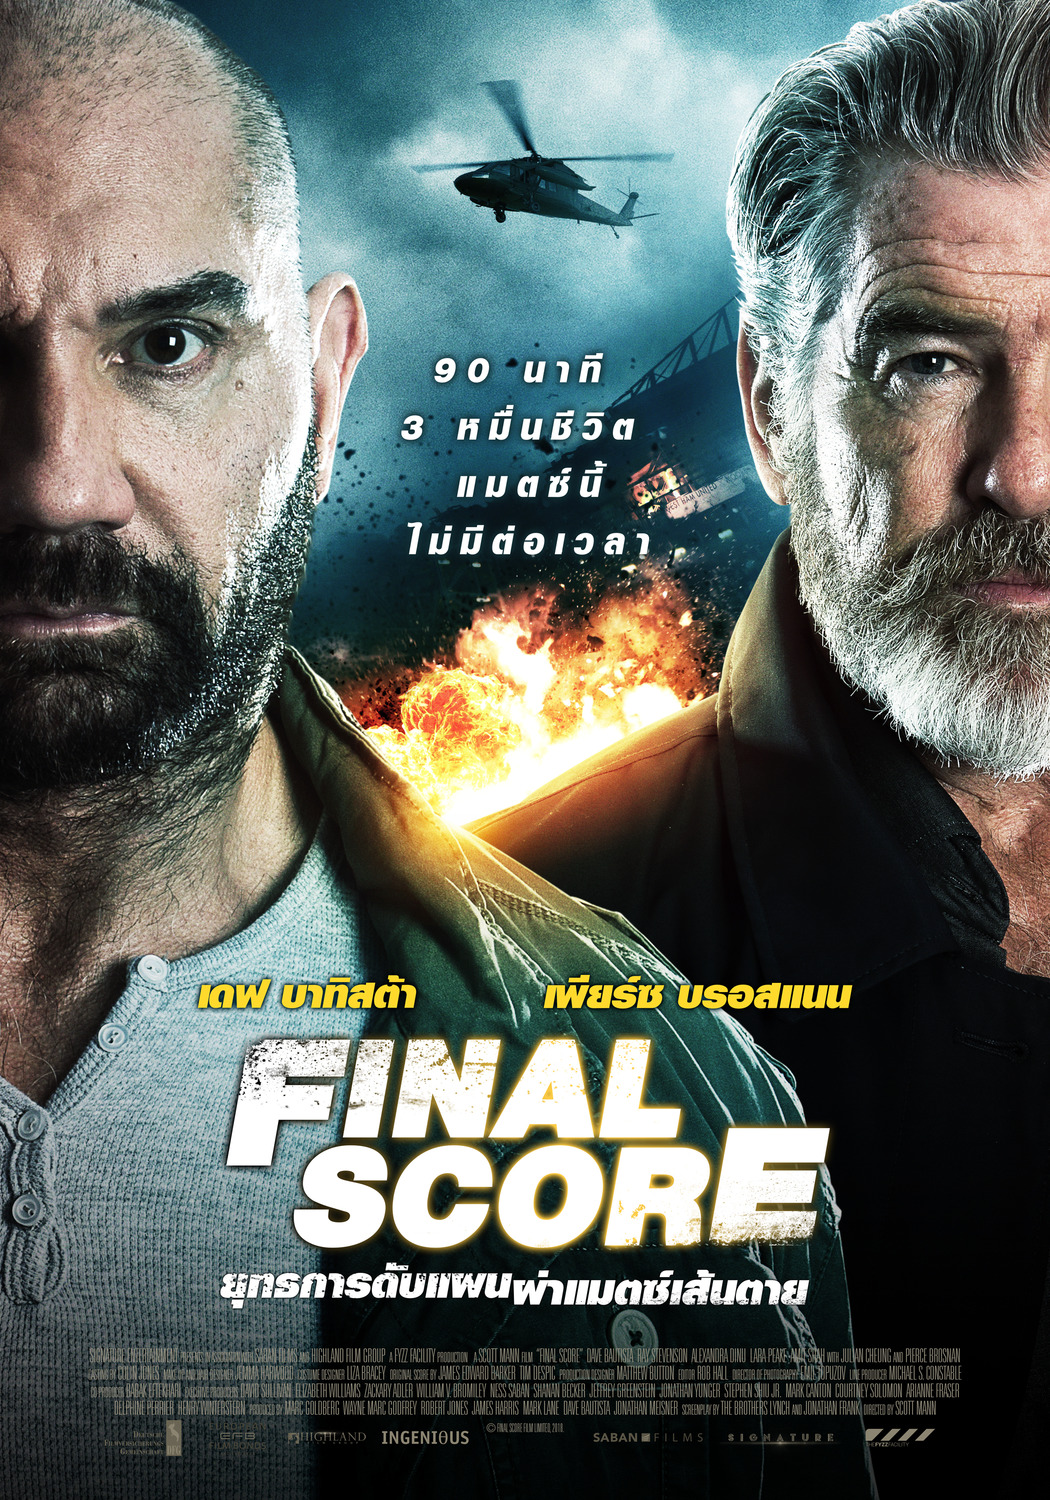 Final Score film completo in italiano download gratuito hd 1080p